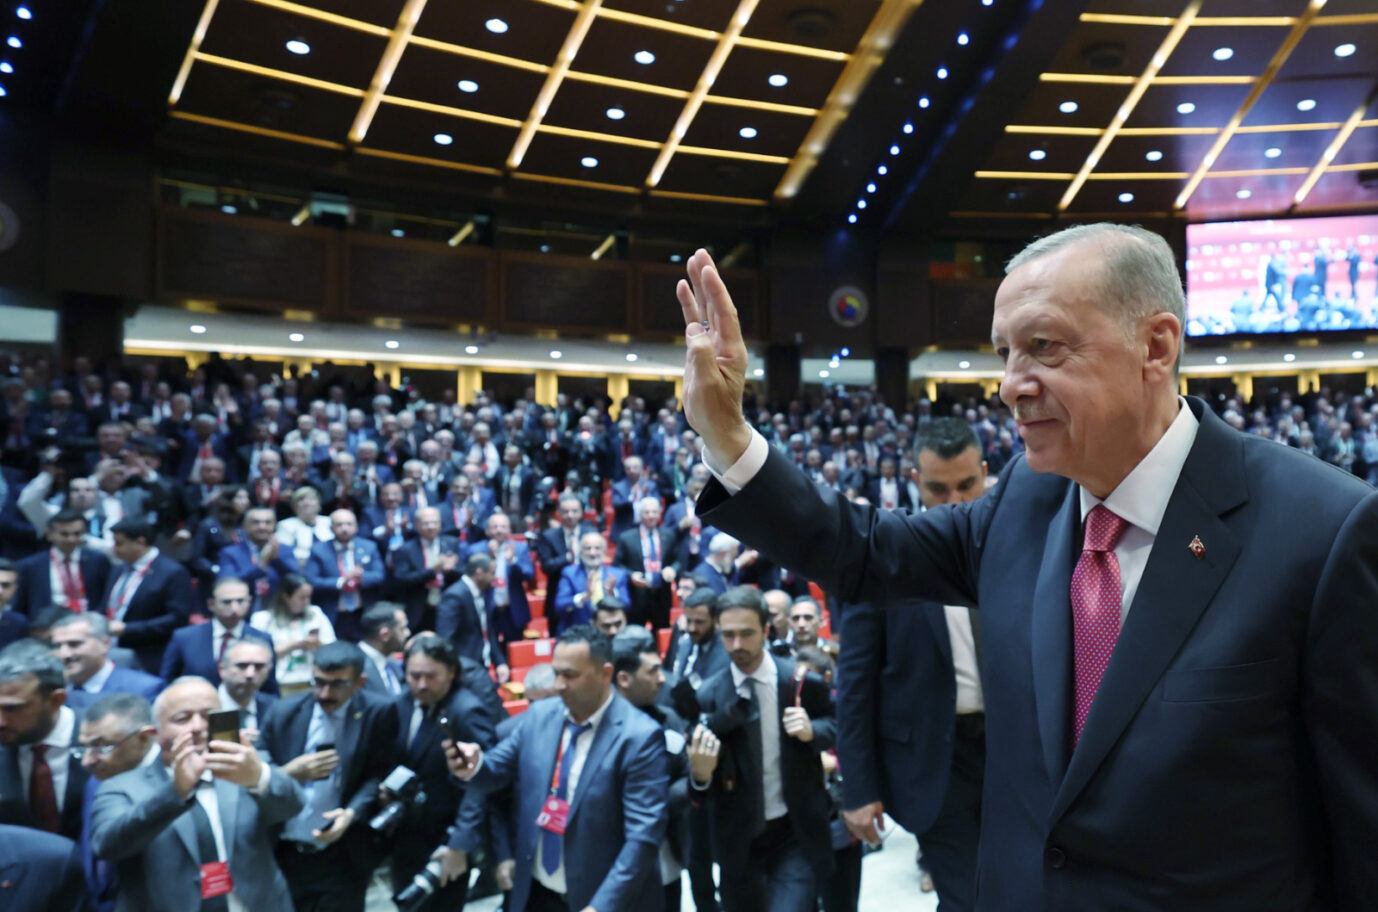 Der türkische Präsident Recep Tayyip Erdoğan führt das Land weiter; aber wohin?